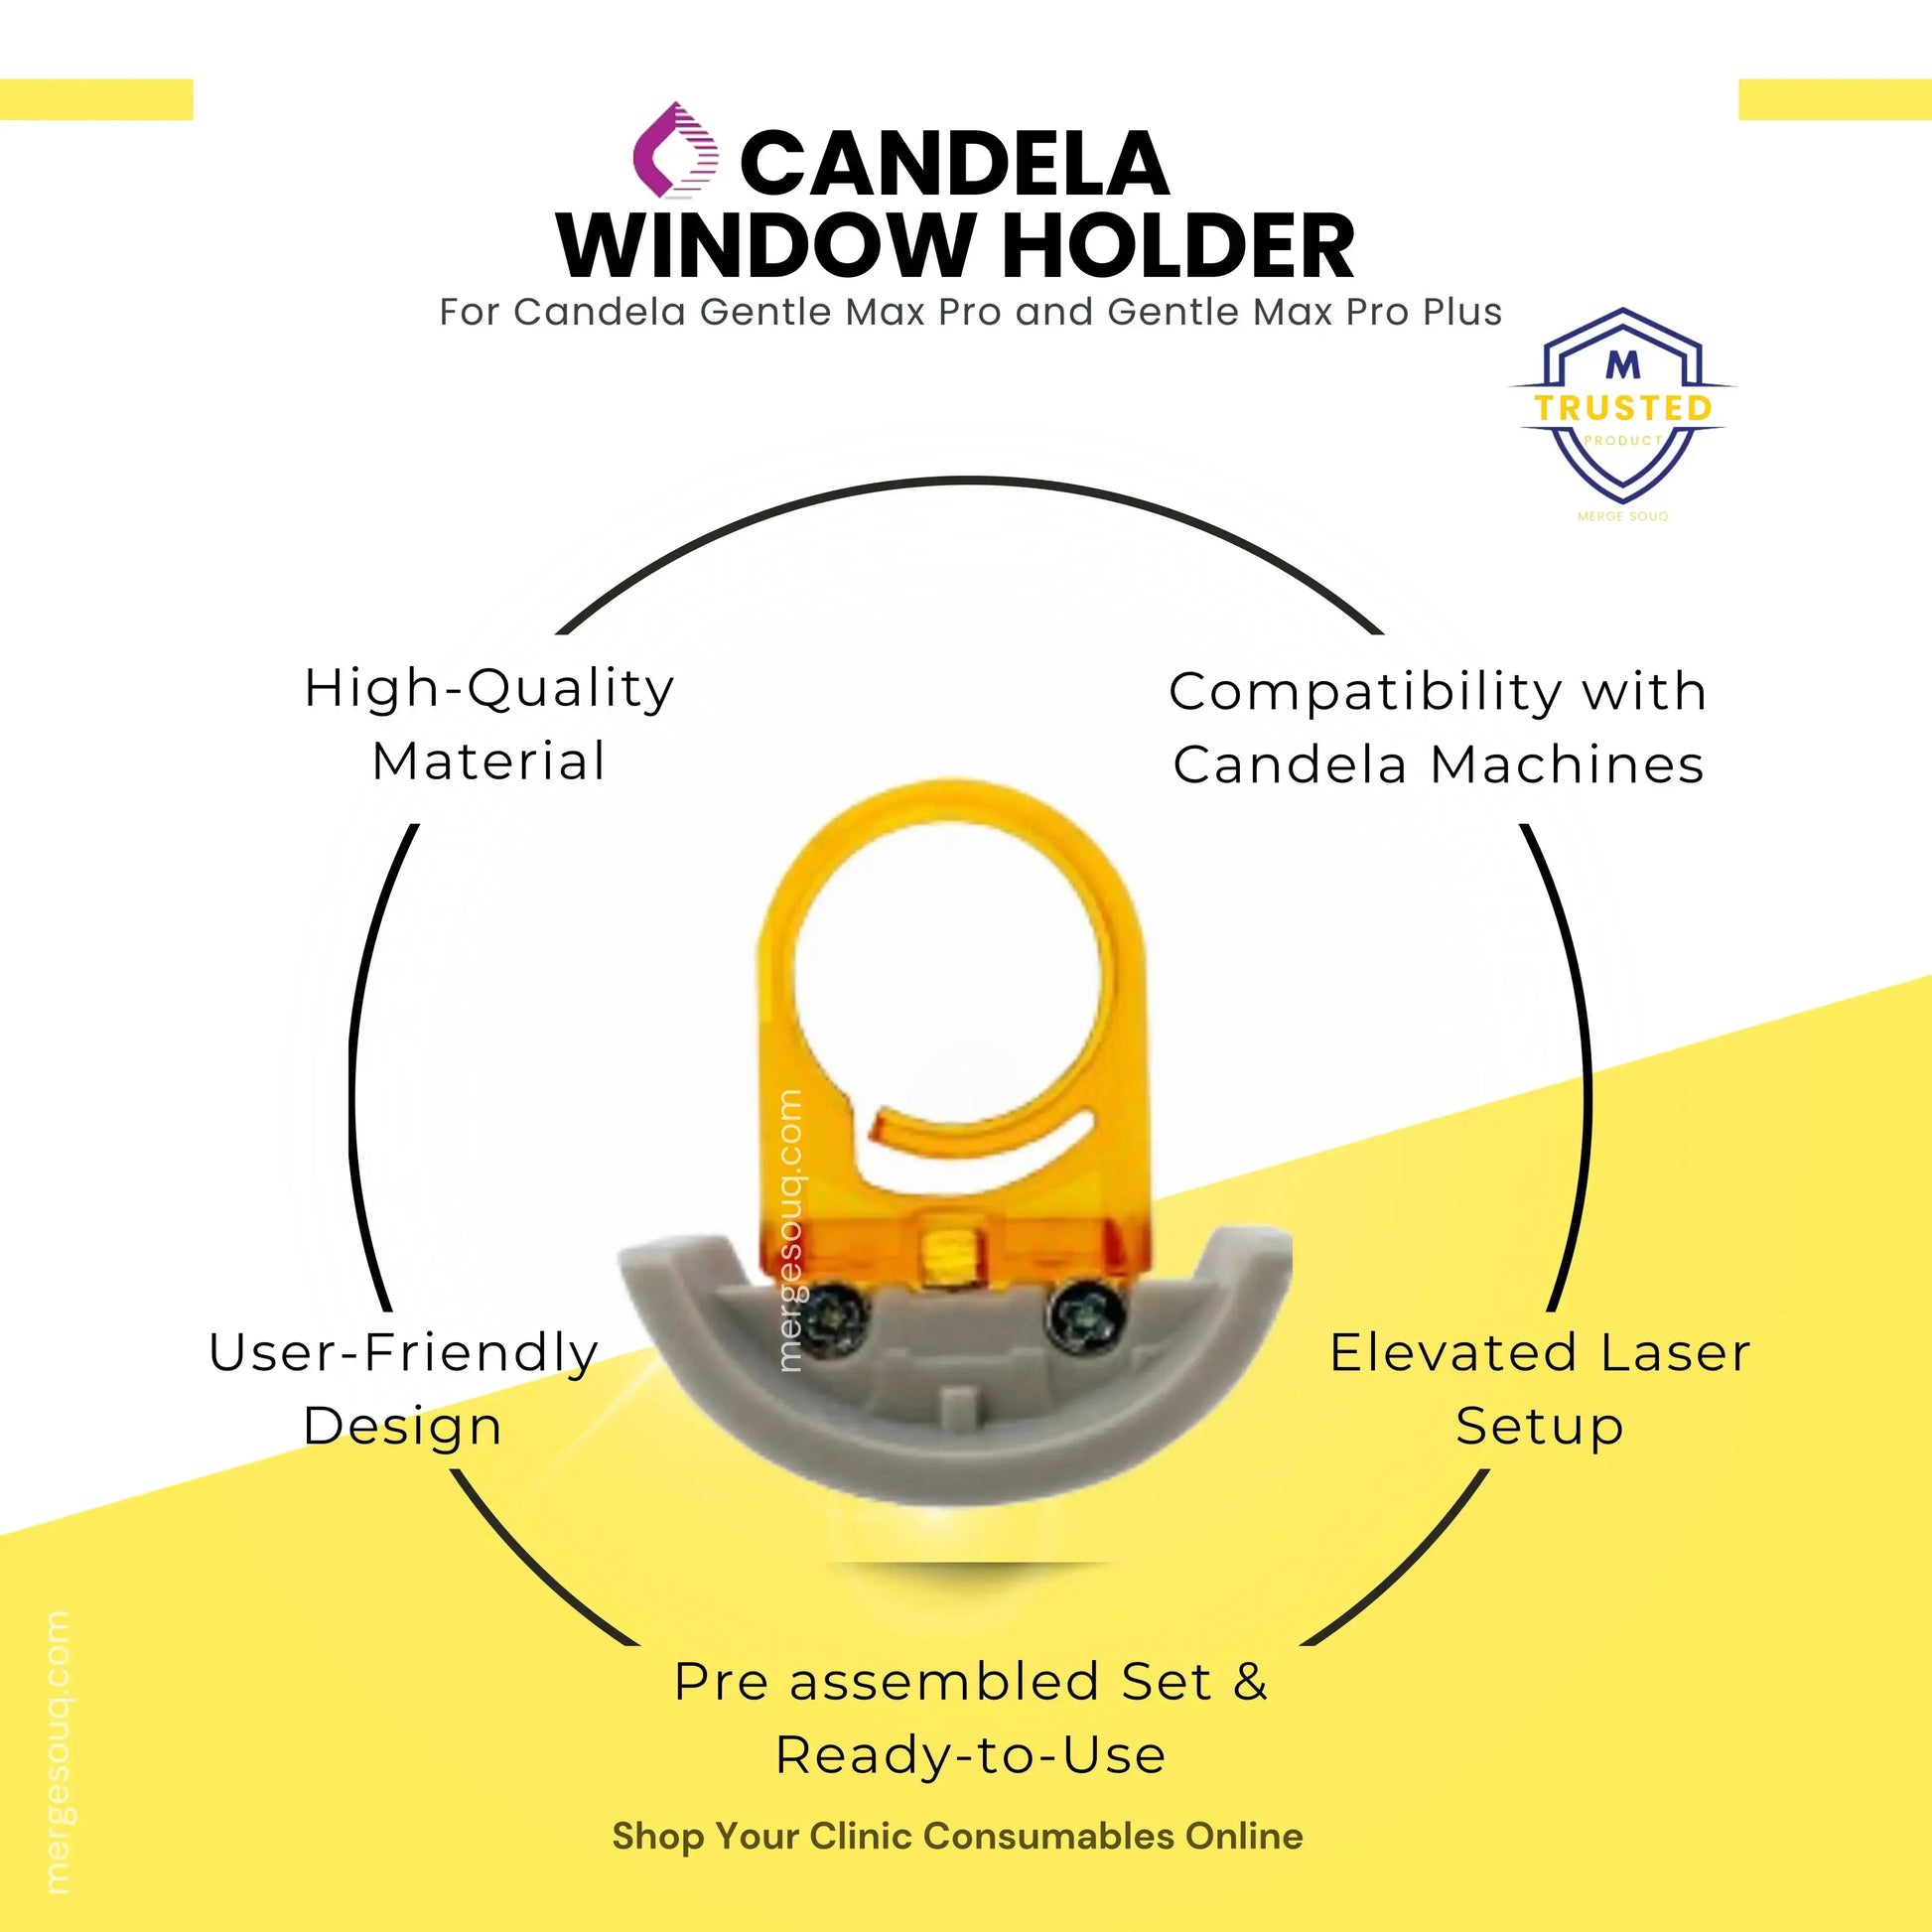 Candela Window Holder| Best Quality|Laser Device Holder